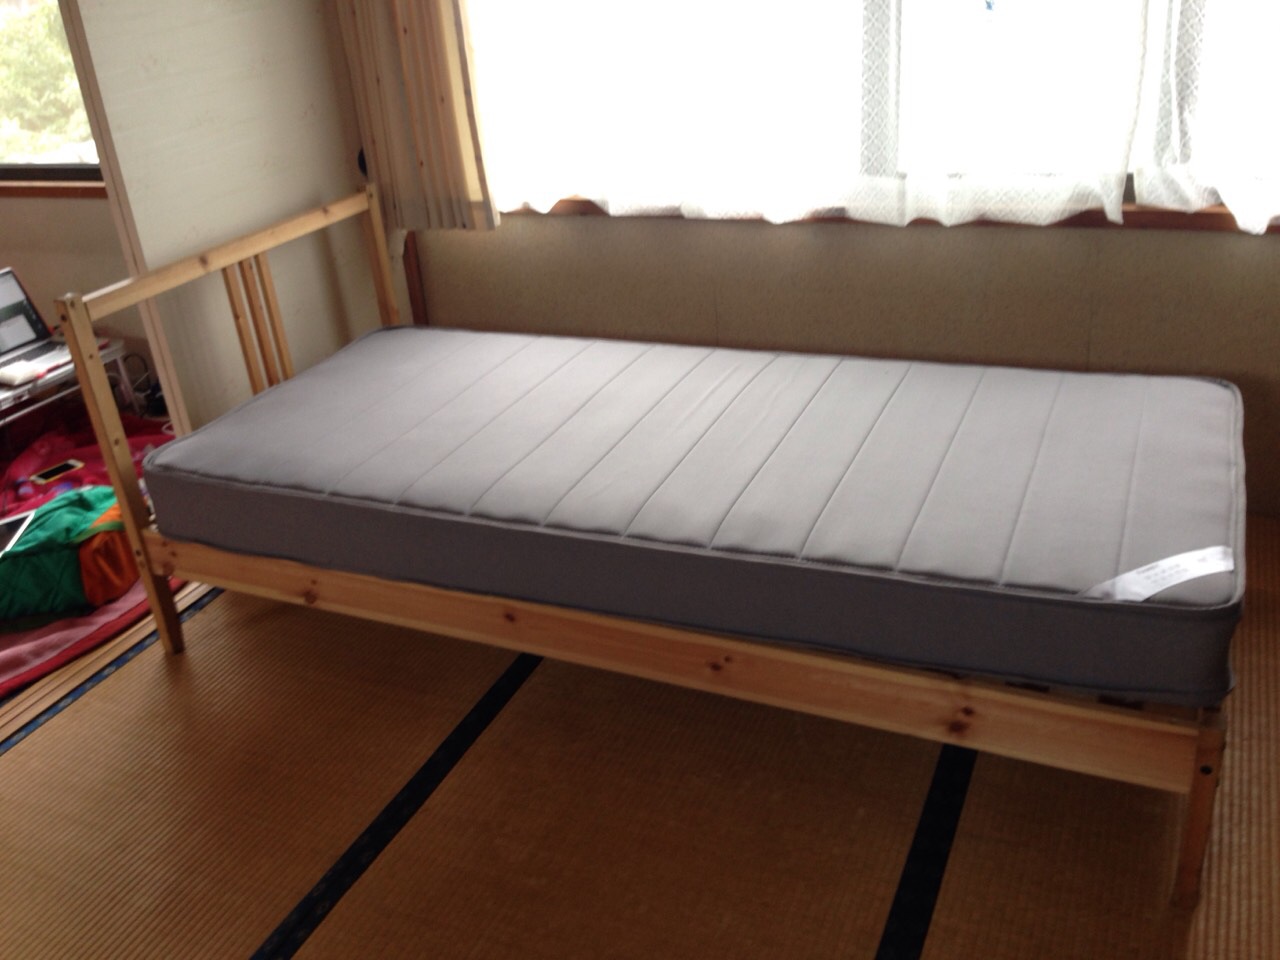 IKEAナチュラル色ベッドです。